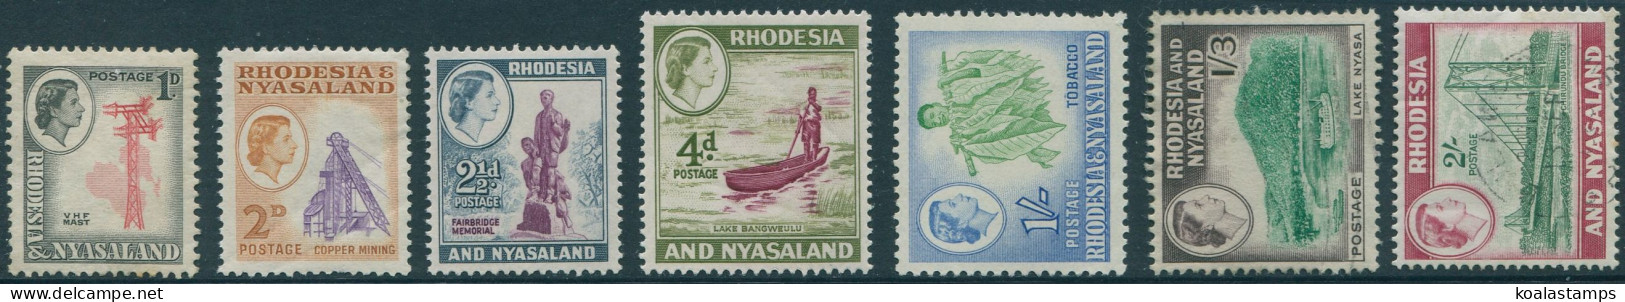 Rhodesia And Nyasaland 1959 SG20-26 Scenes (5) MNH - Rhodesien & Nyasaland (1954-1963)